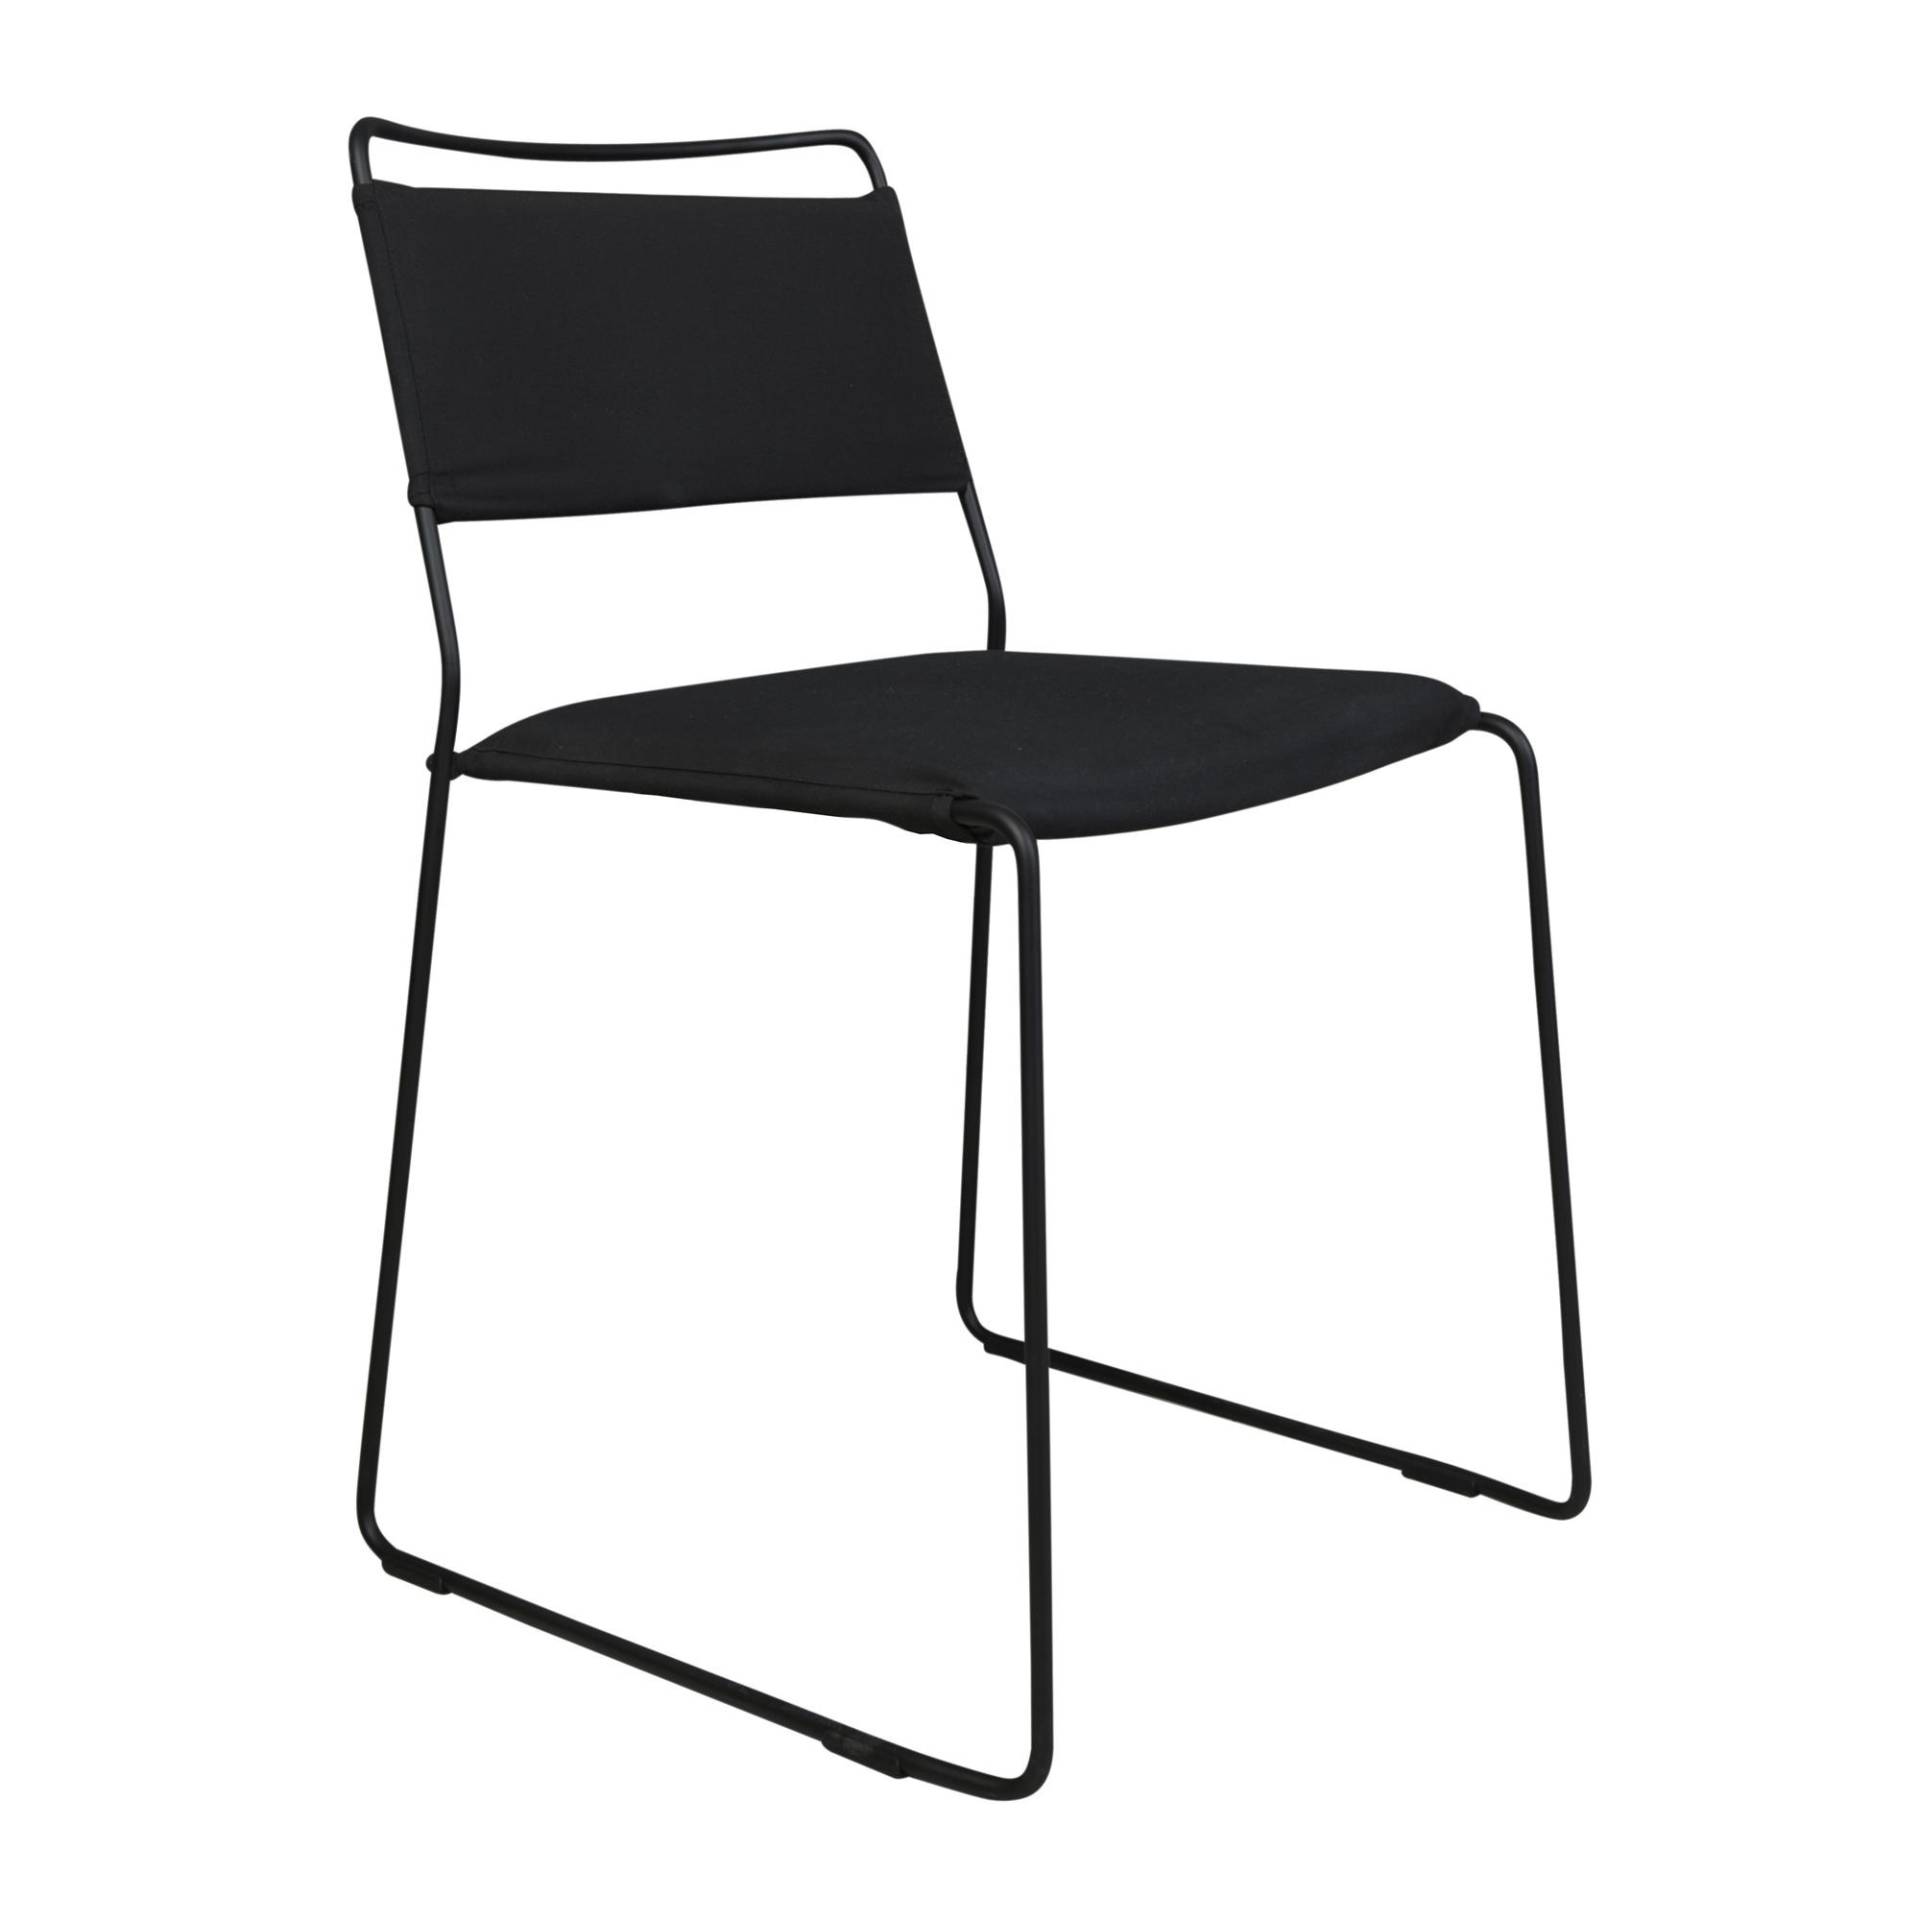 OK Design - One Wire Chair Stuhl - schwarz/Kissen 100% Acryl abnehmbar/Füllung Polyurethan/BxHxT 49x76x56cm/Gestell schwarz pulverbeschichtet von OK Design